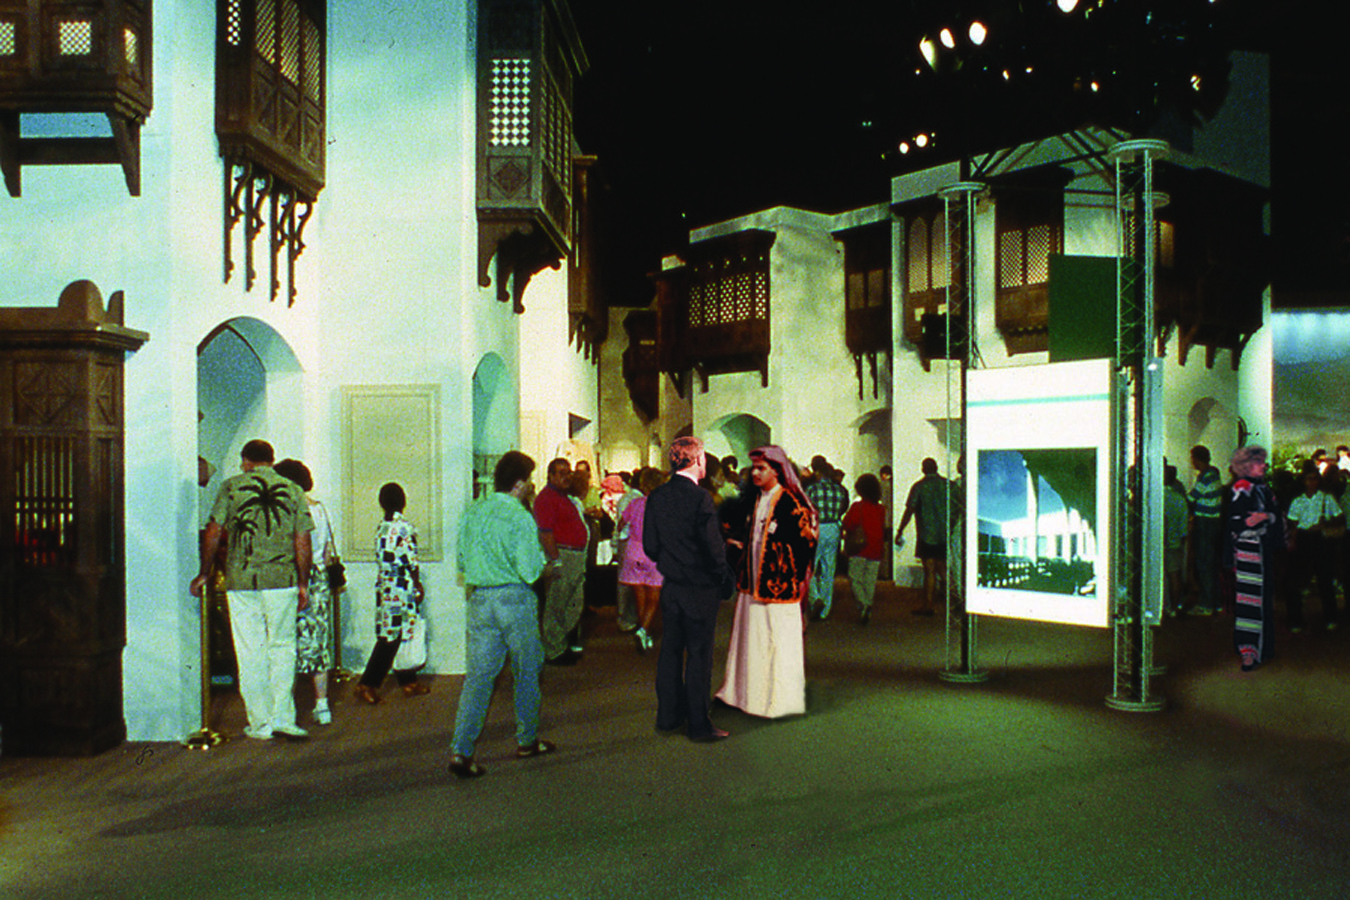 ksa 14strt : PEOPLE: Riyadh Street  – Lighting Similar to 10 Broadway Shows, Plus a Laser Theater